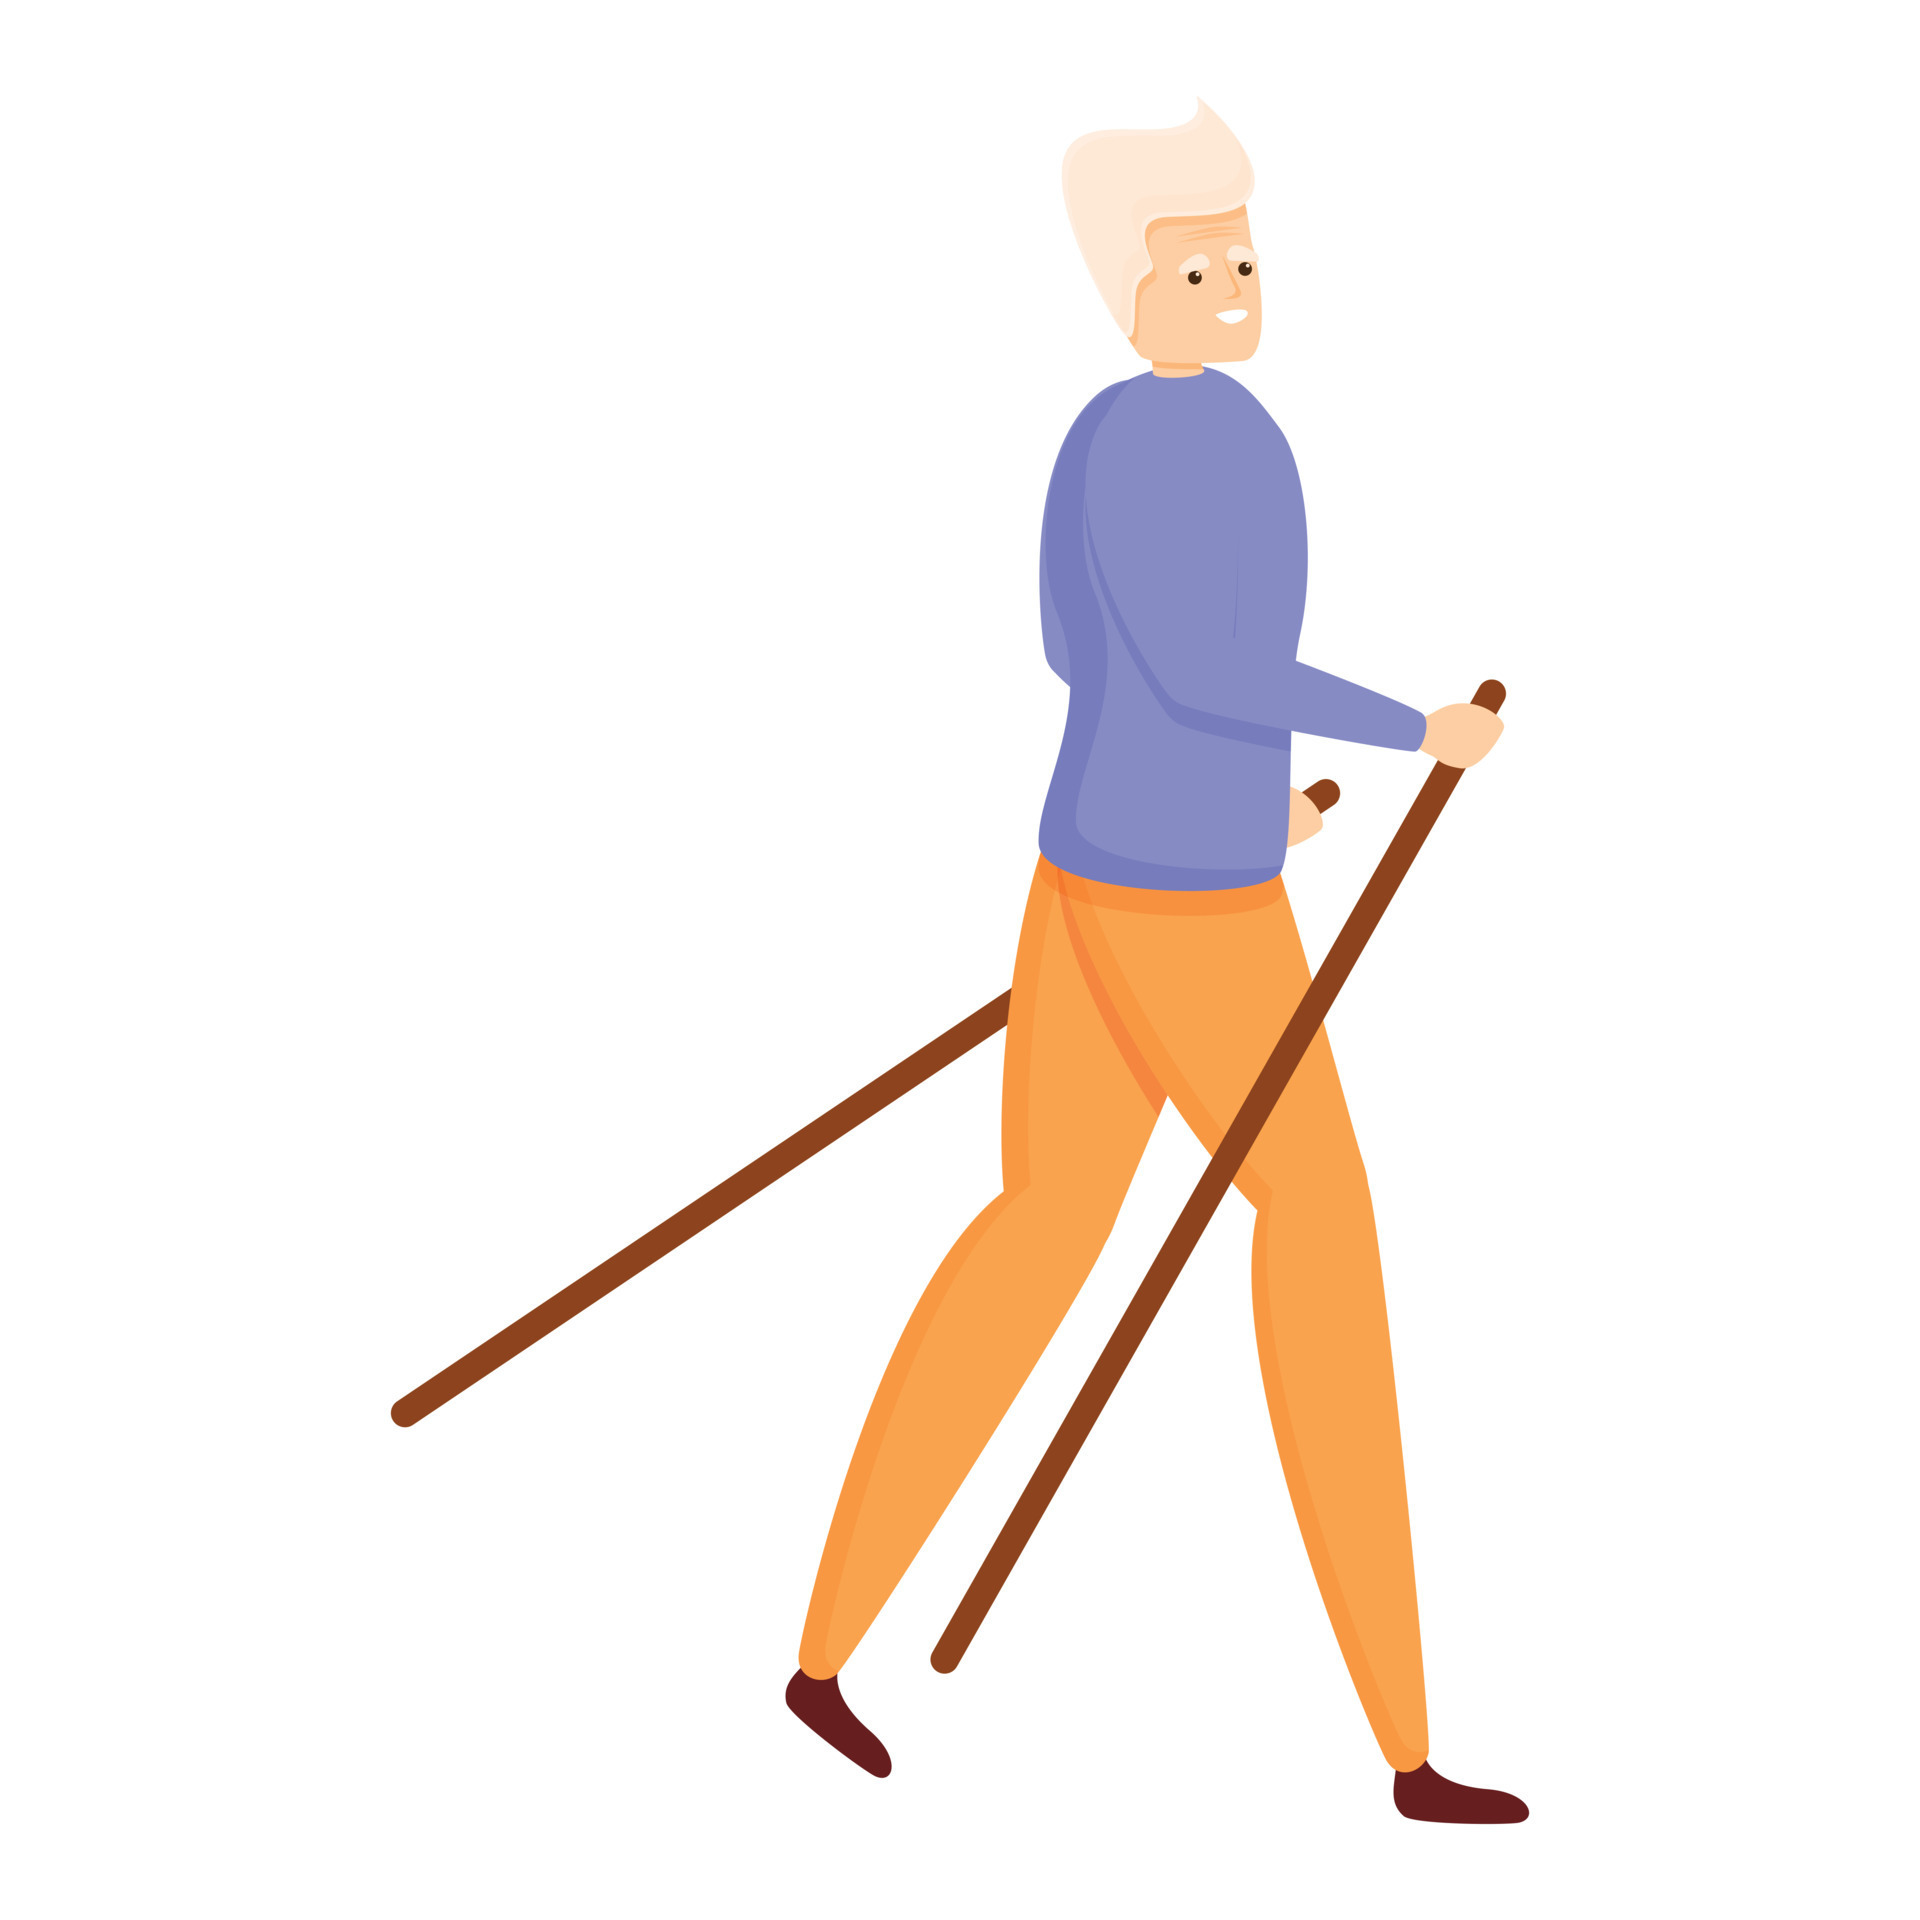 escursioni a piedi andare in pensione uomo icona, cartone animato stile  14293988 Arte vettoriale a Vecteezy